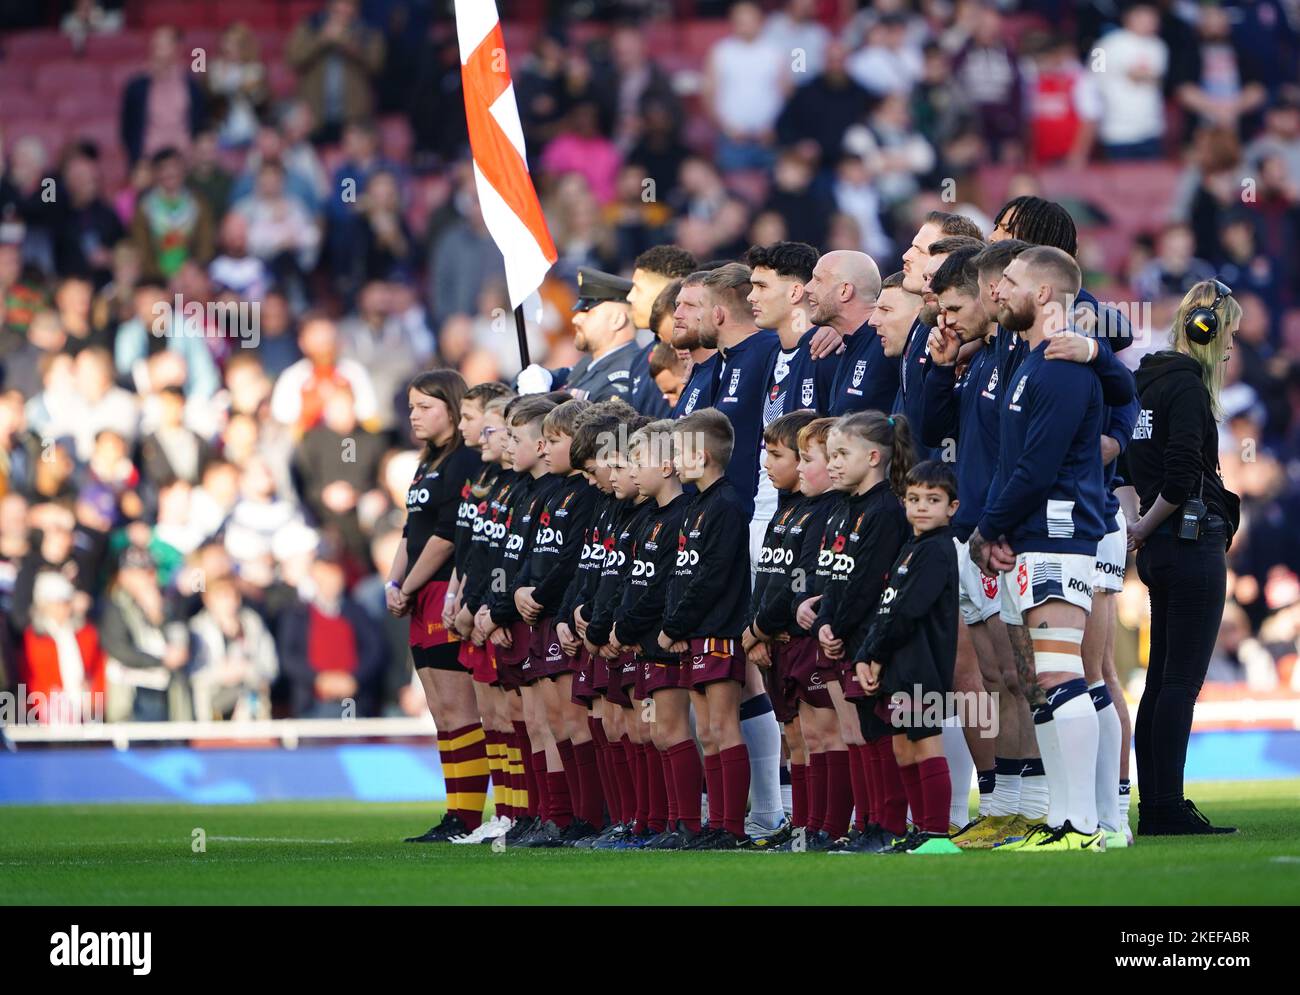 England steht vor dem Halbfinale der Rugby League im Emirates Stadium in London für die Nationalhymnen an. Bilddatum: Samstag, 12. November 2022. Stockfoto